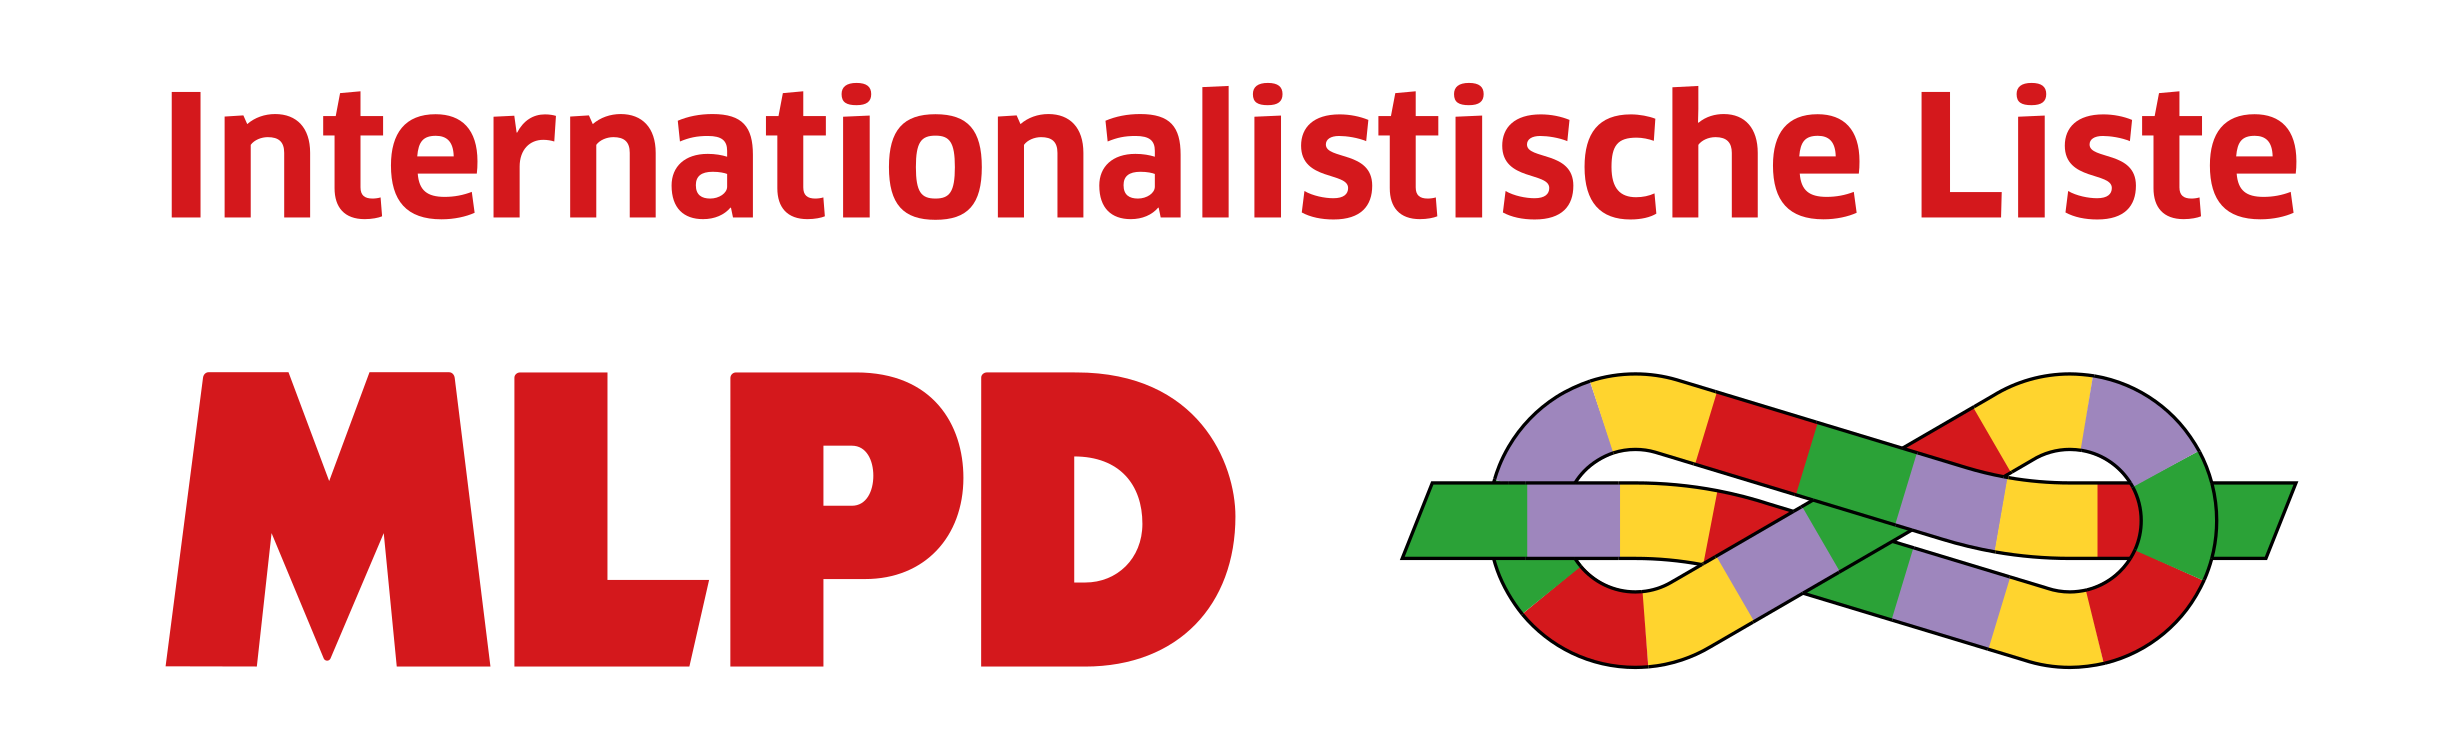 Internationalistische Liste / MLPD